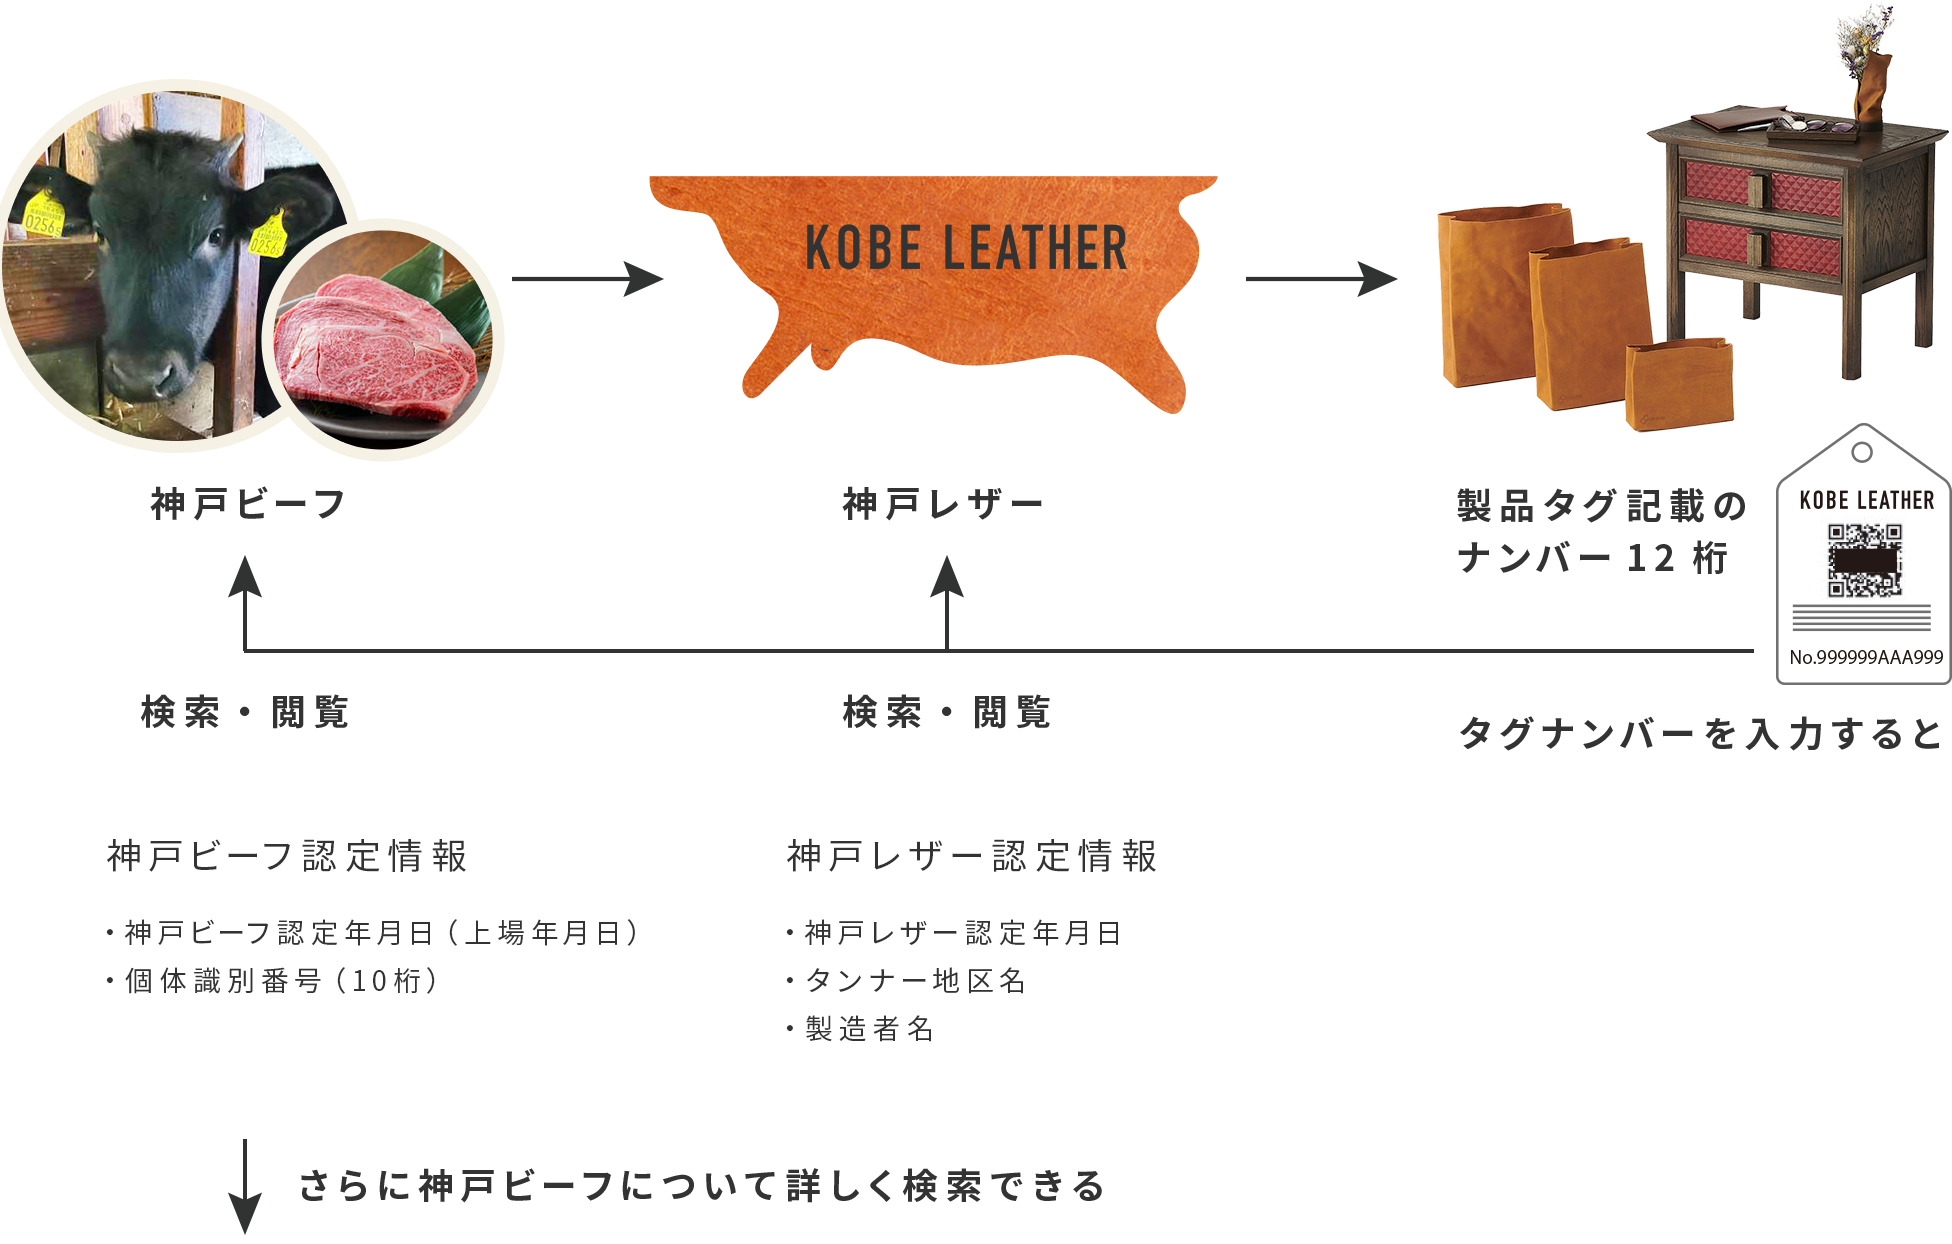 神戸レザー証明システムの流れ図